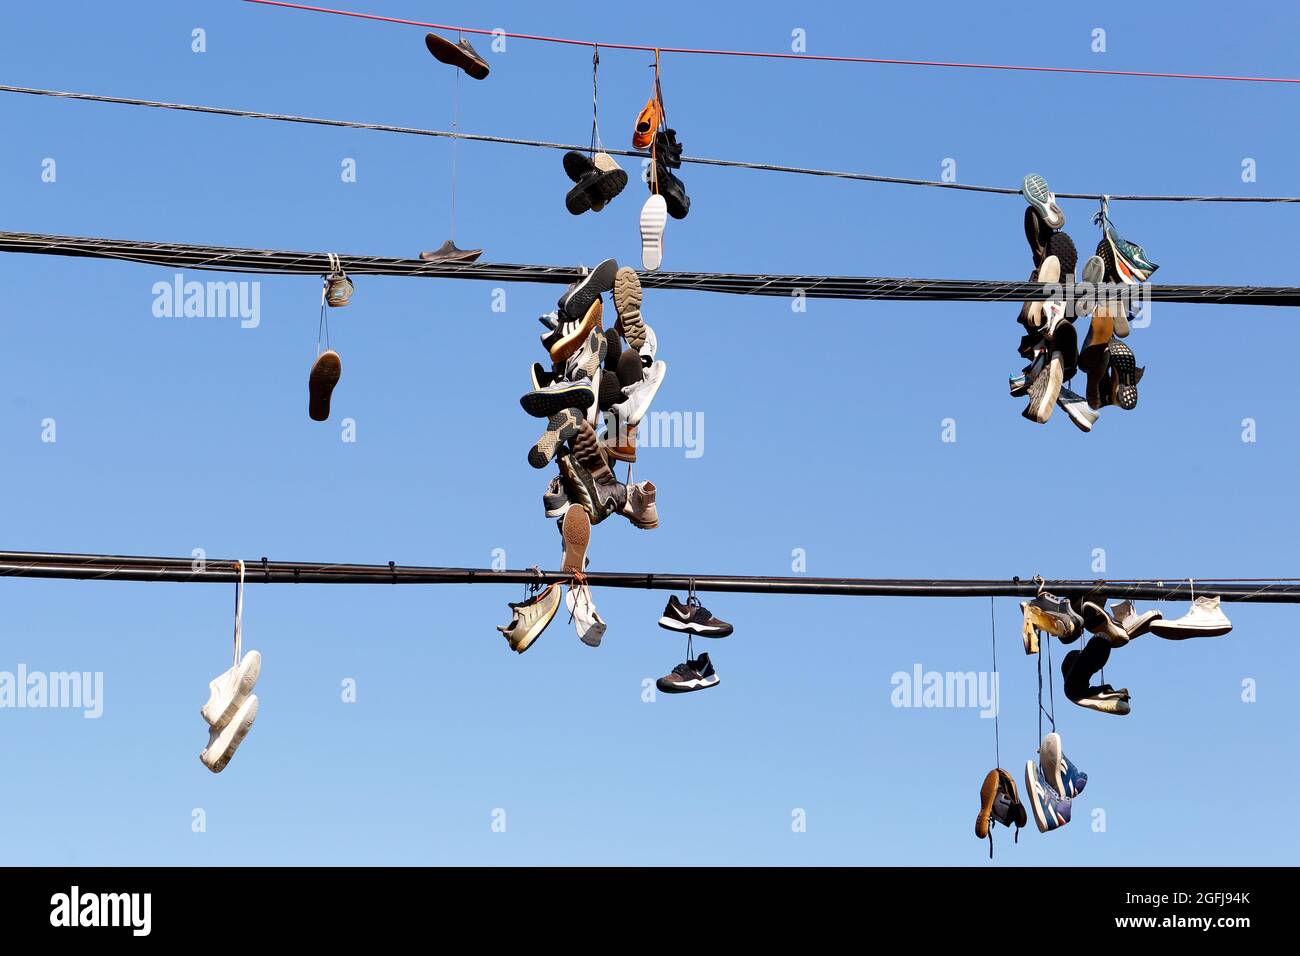 chaussures, baskets accrochées à un fil téléphonique contre un ciel bleu ensoleillé ; baskets attachées ensemble et jetées sur une ligne électrique. Banque D'Images